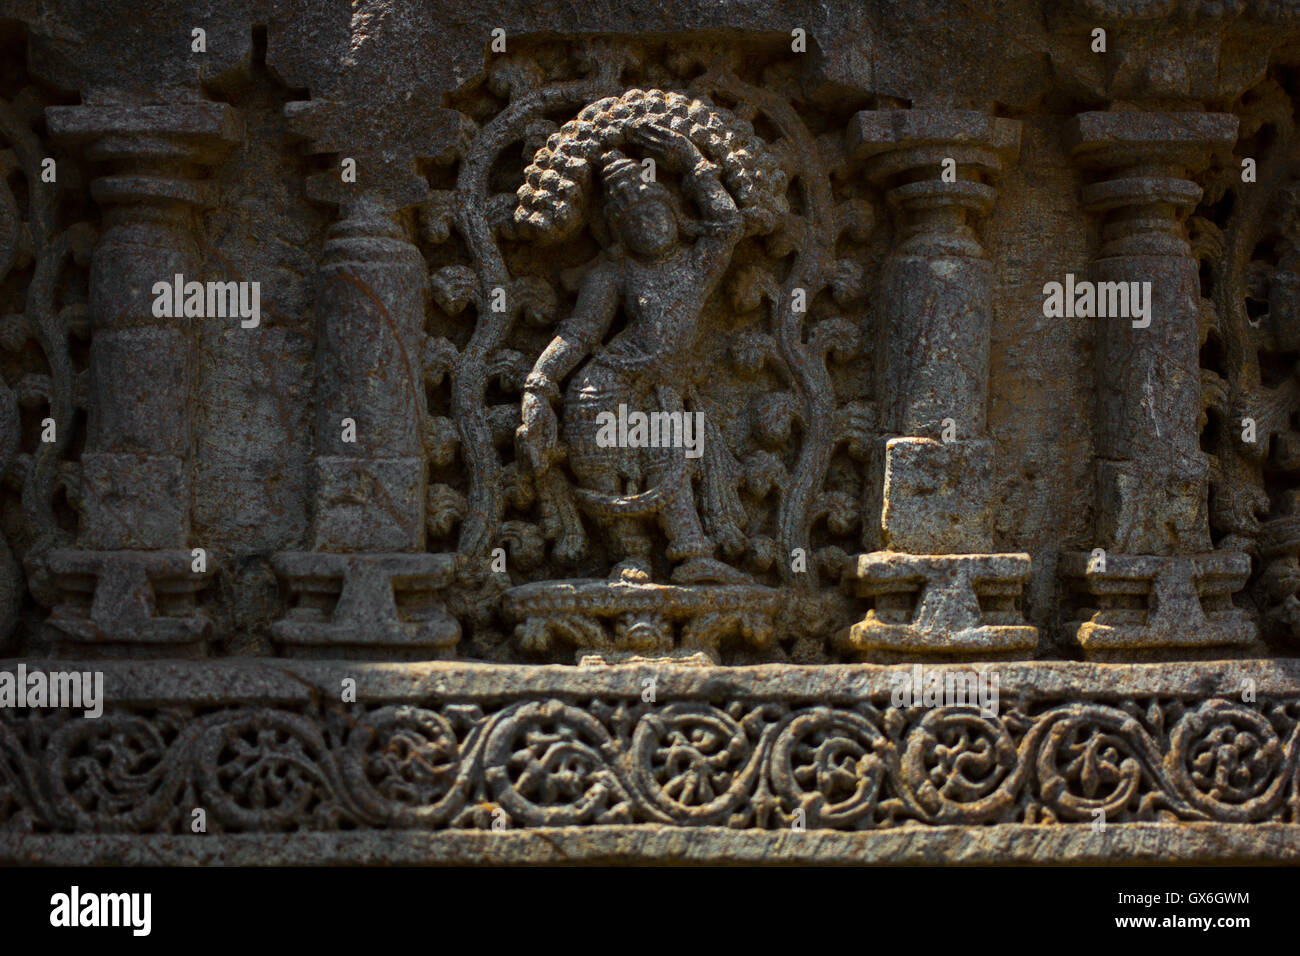 Dame danse sculpture sur eves culte extra-mur dans le temple de Chennakesava Somanathapura,Mysore, Inde Karnataka,Asie, Banque D'Images